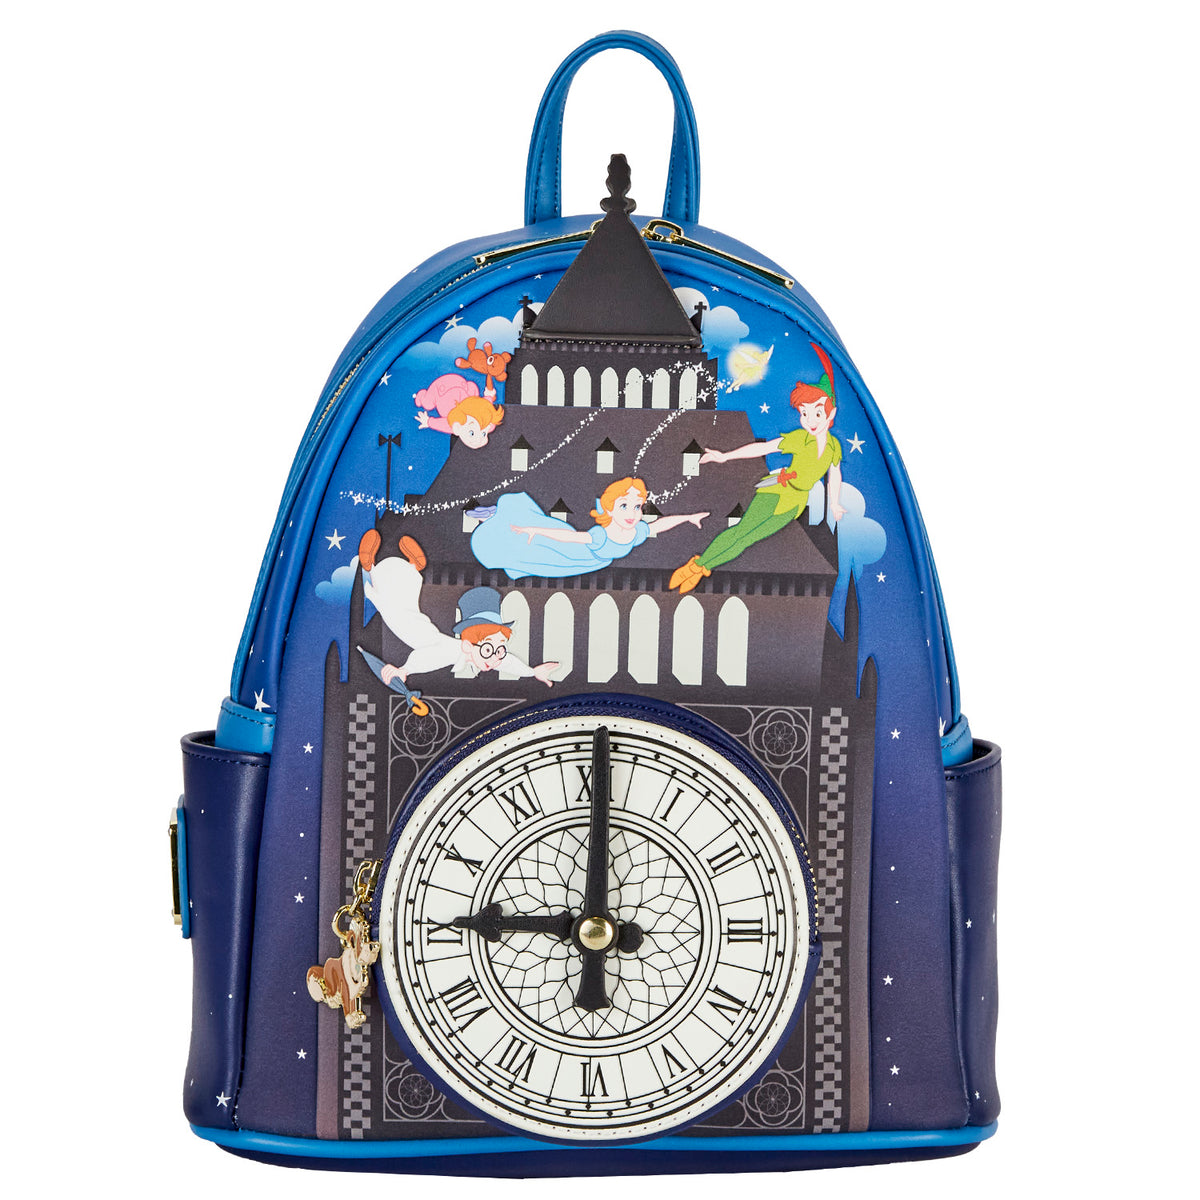 Peter Pan Clock Glow in the Dark Mini Backpack